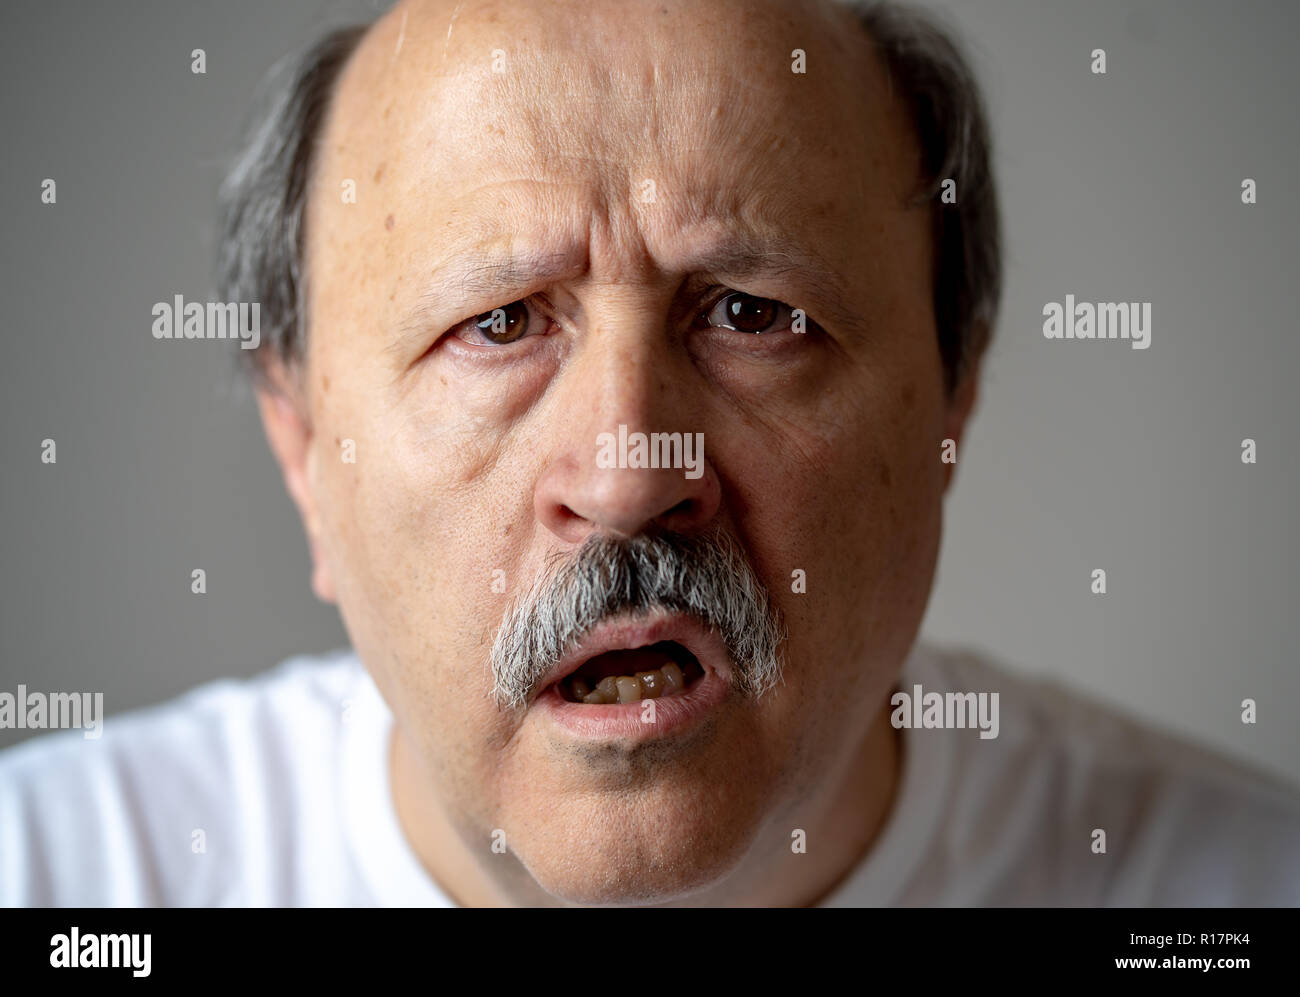 Close up ritratto di senior man looking confusi e smarriti affetti da demenza, la perdita di memoria o il morbo di Alzheimer in salute mentale in adulti più anziani e più tardi Foto Stock